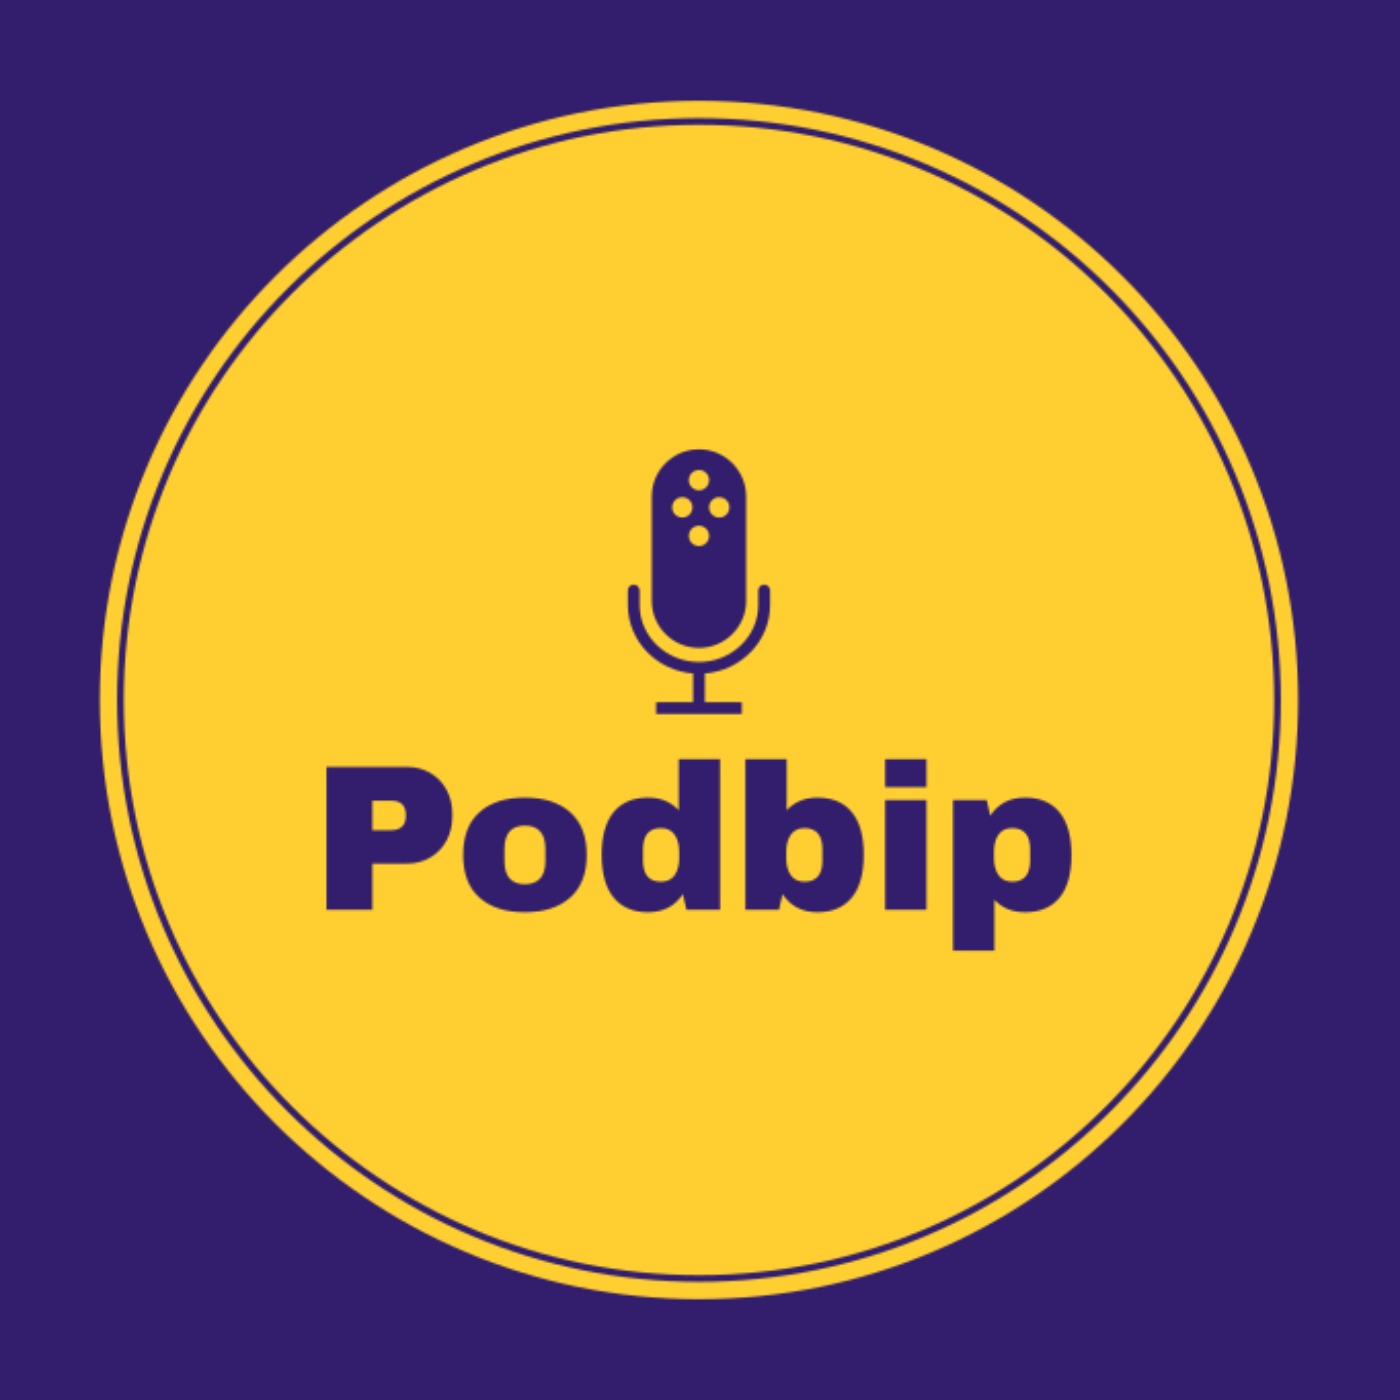 Listen Podcast on PodBip